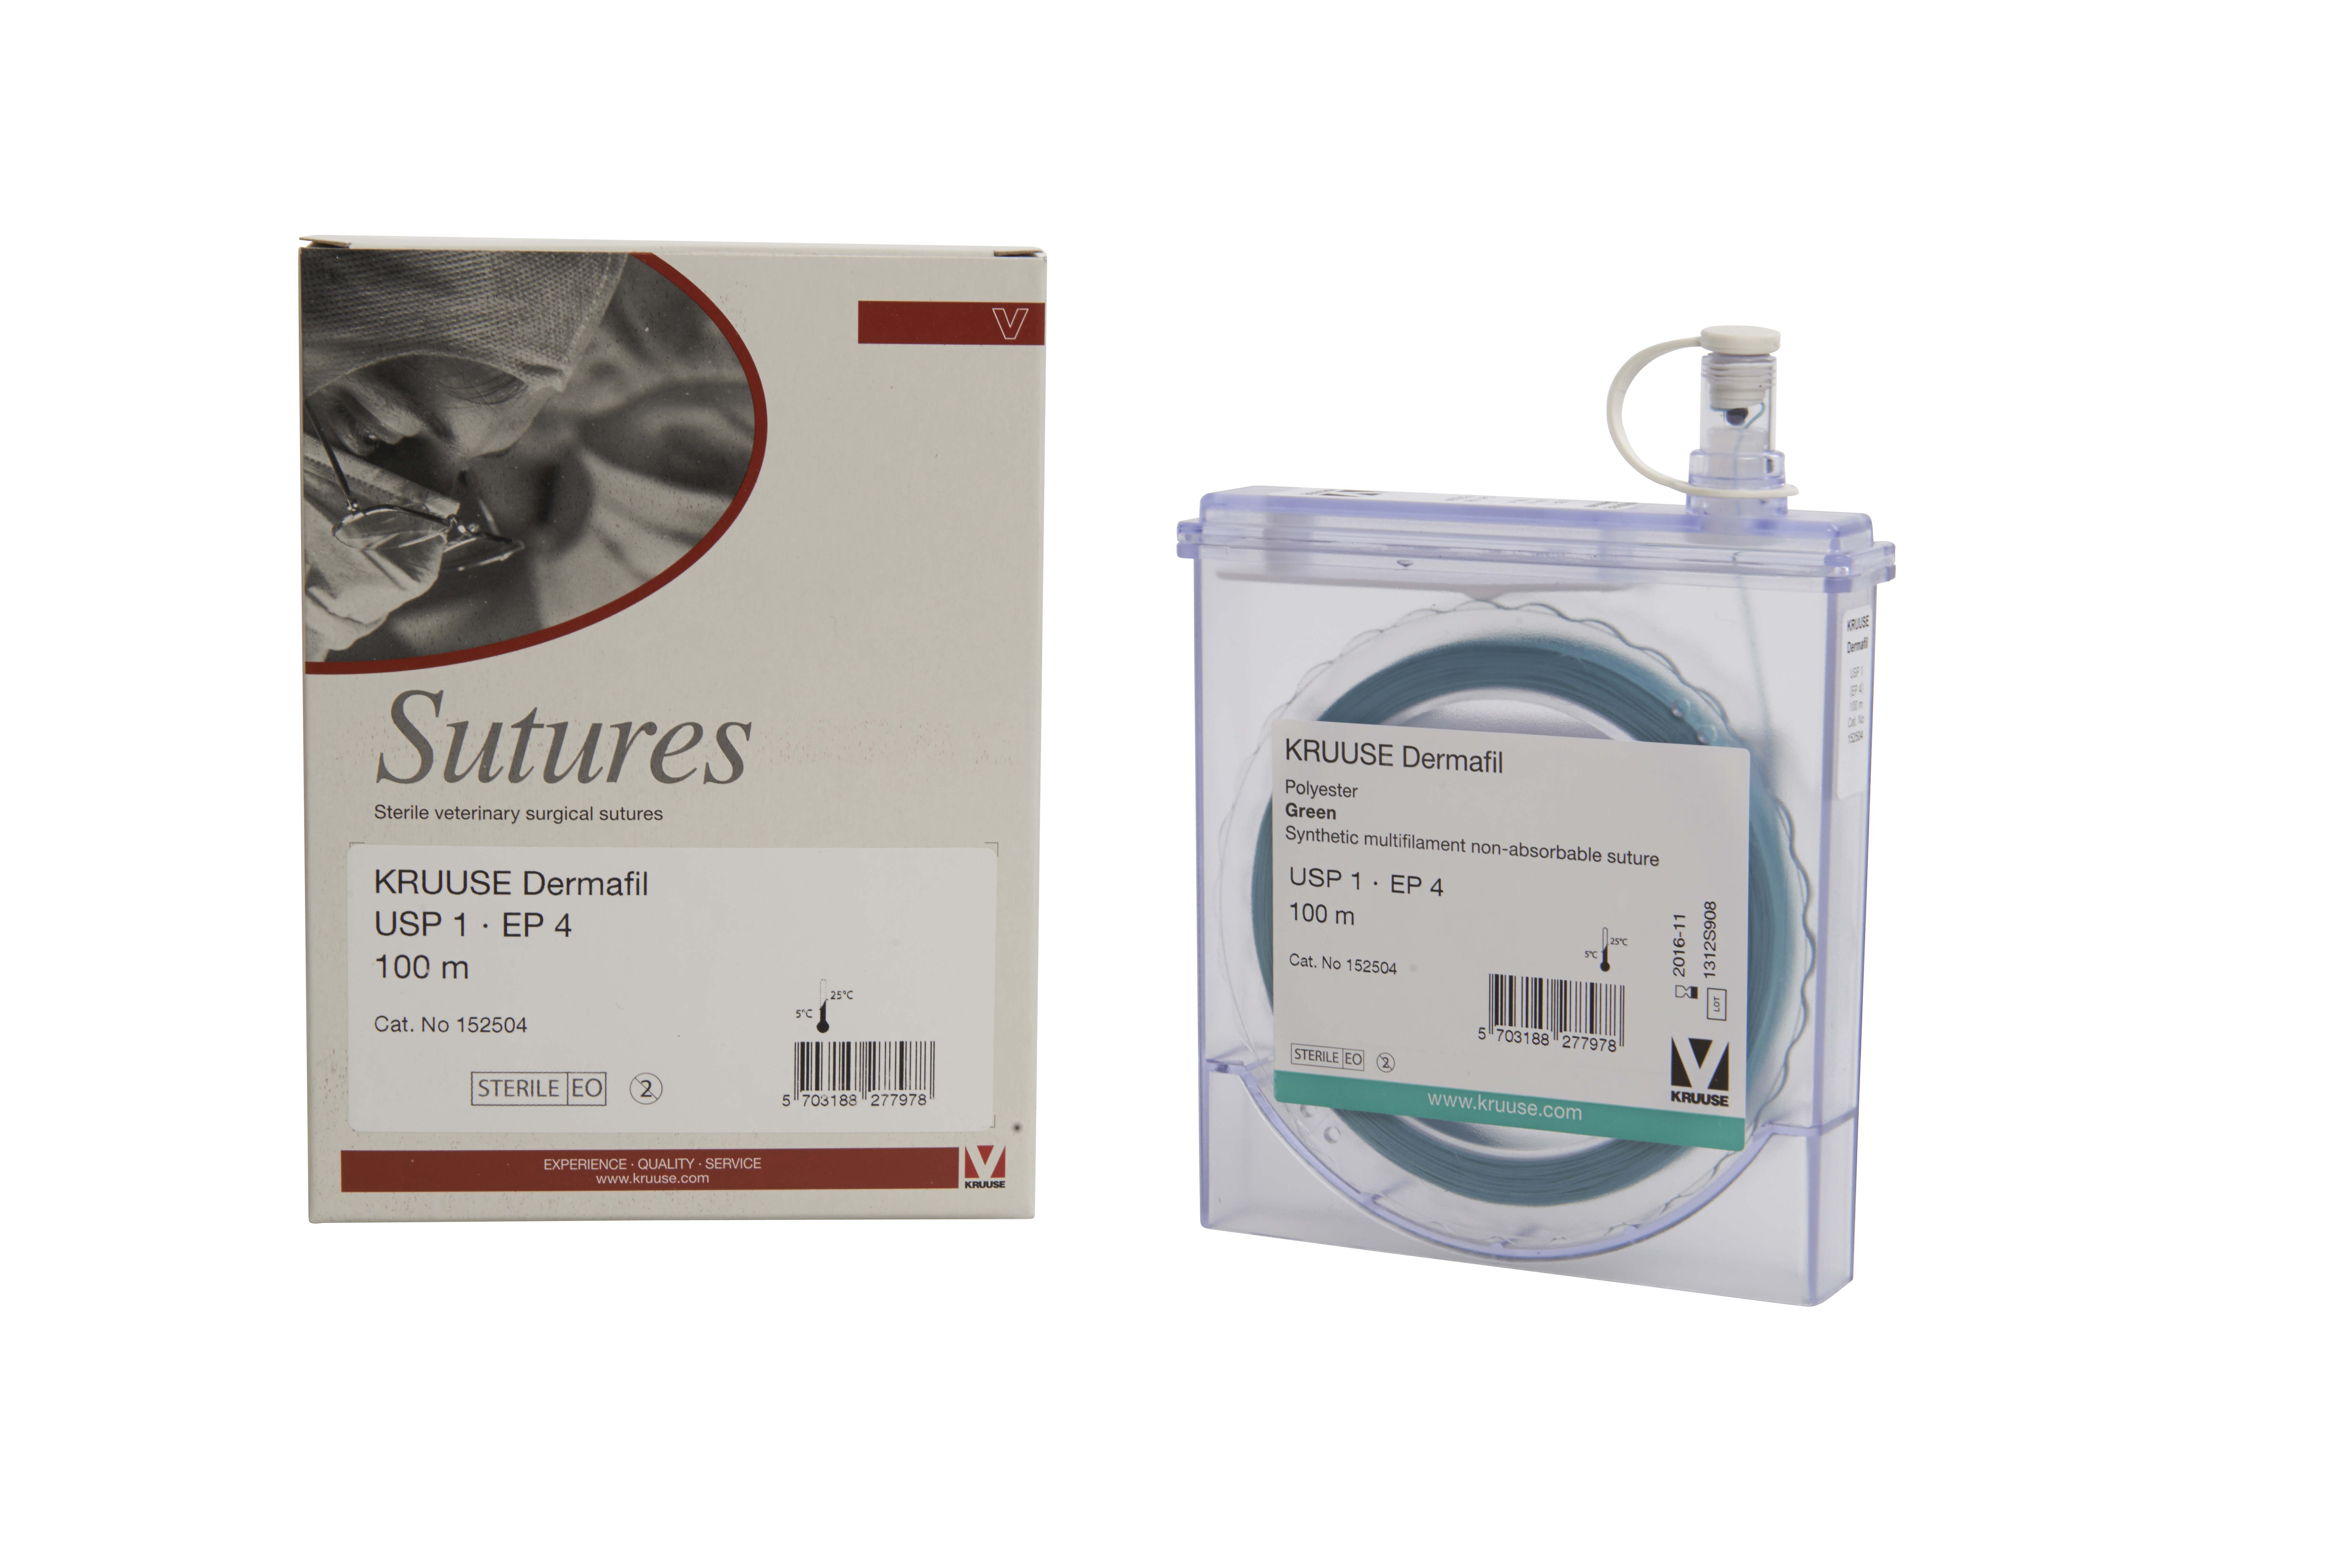 KRUUSE Dermafil suture, USP 1, EP 4, 100m